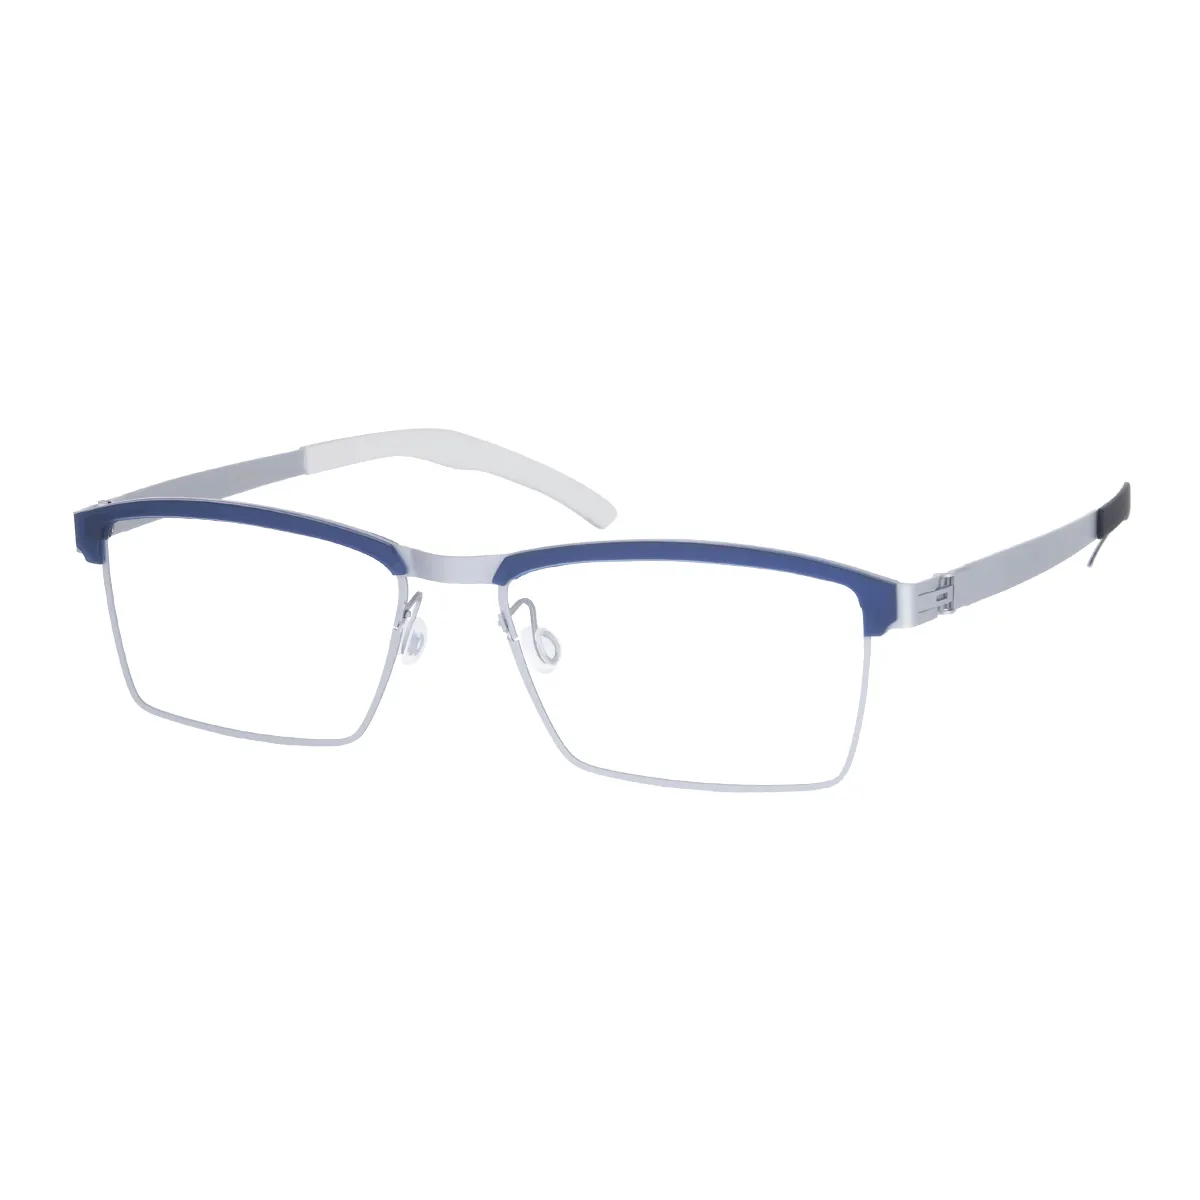 Gang - Half-Rim Silver Blue Glasses for Men - EFE